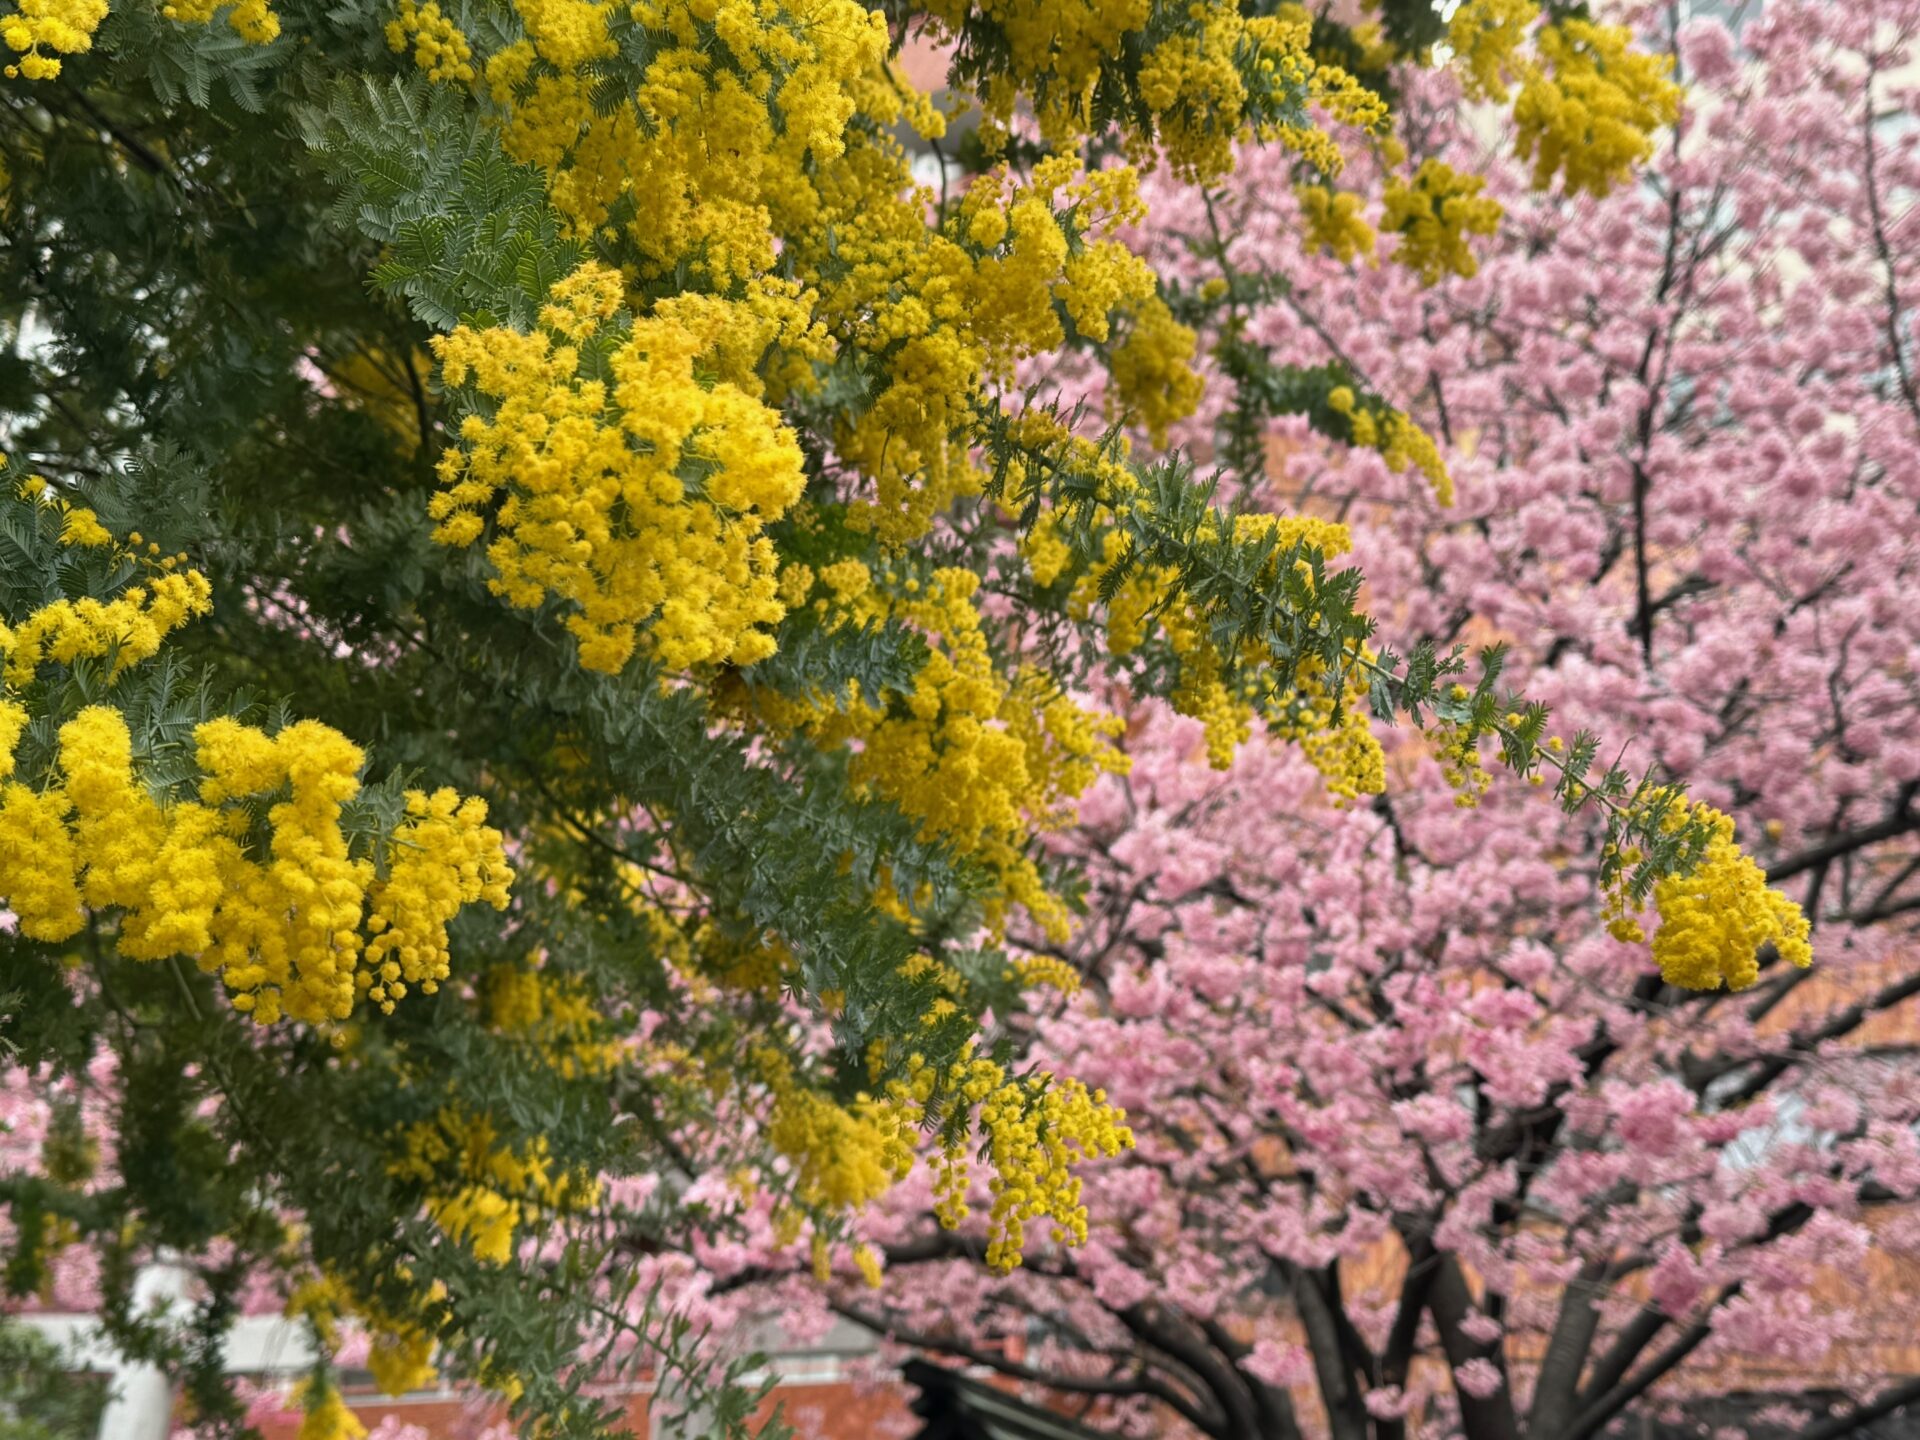 ミモザとさくらの木が重なりあう写真。画面左、手前にはミモザの木が、画面右、奥には桜の木が映っています。イエローとピンクのコントラストが春らしくてきれいです